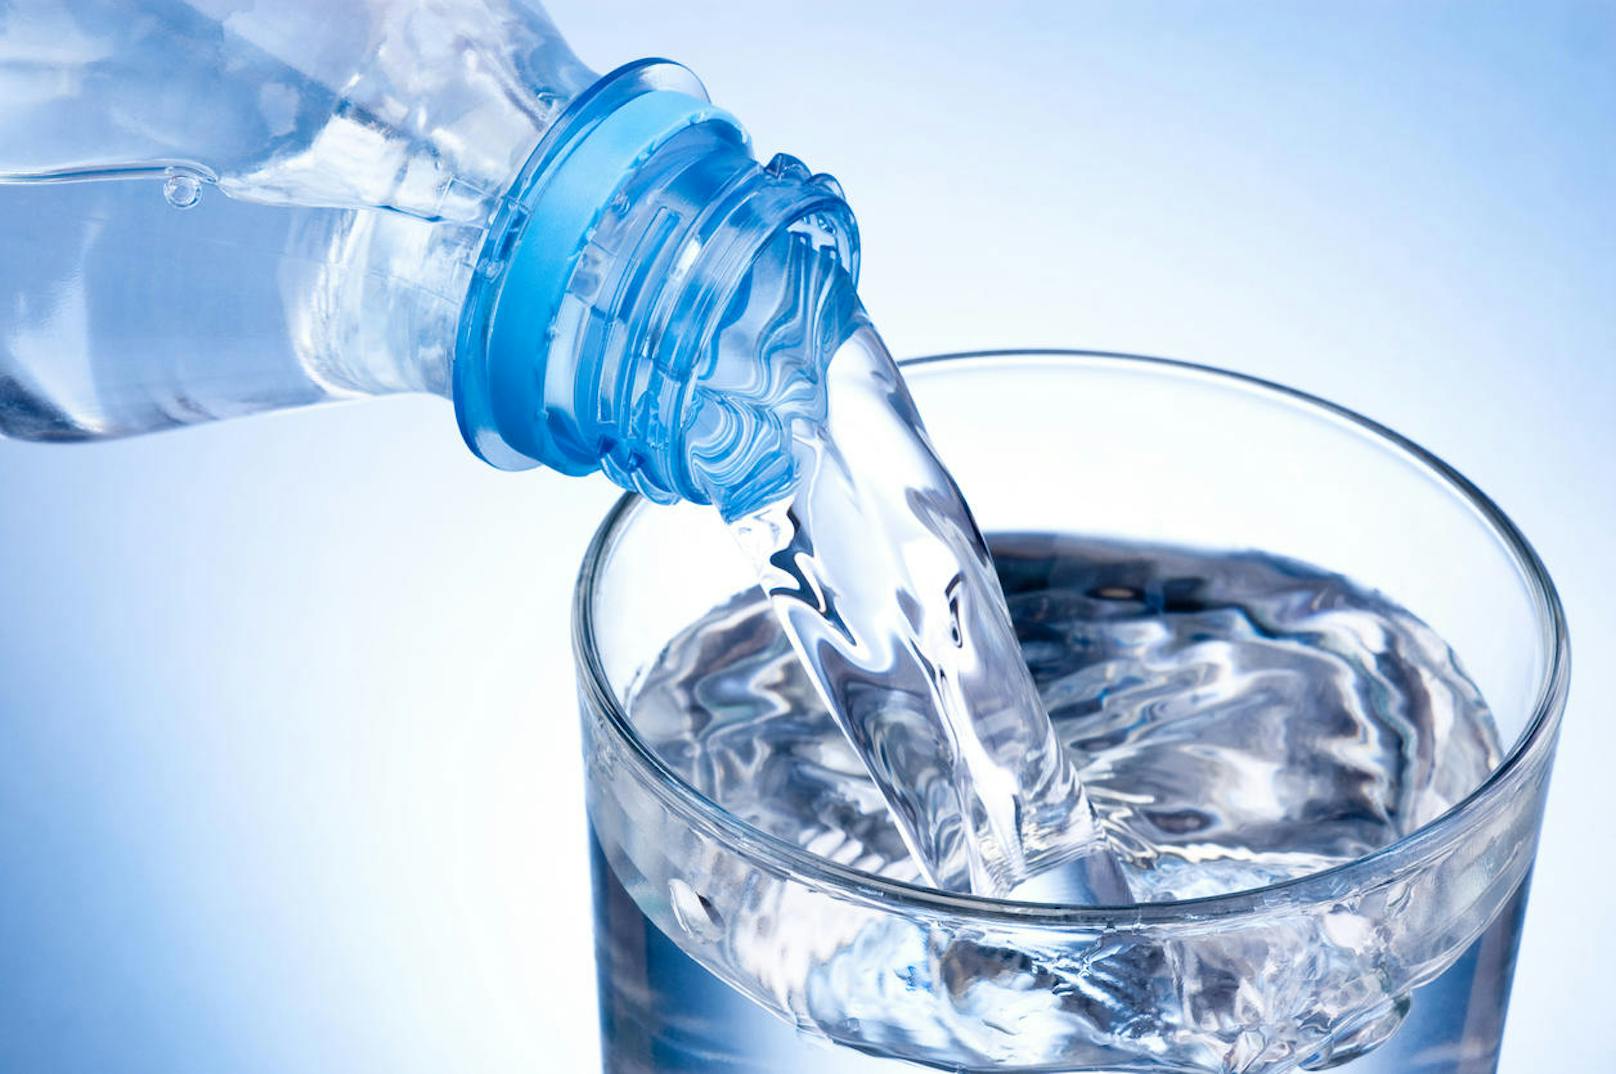 <strong>Wasser!&nbsp;</strong>Das Mindesthaltbarkeitsdatum auf Wasserflaschen bezieht sich im Grunde eher auf die Flasche selbst als auf das Wasser. Das Plastik gibt mit der Zeit Weichmacher an das Wasser ab, weswegen es nach Ablauf des Mindesthaltbarkeitsdatums nicht mehr getrunken werden sollte. Kühl und dunkel in Glasflaschen gelagert, verkommt Wasser nicht.